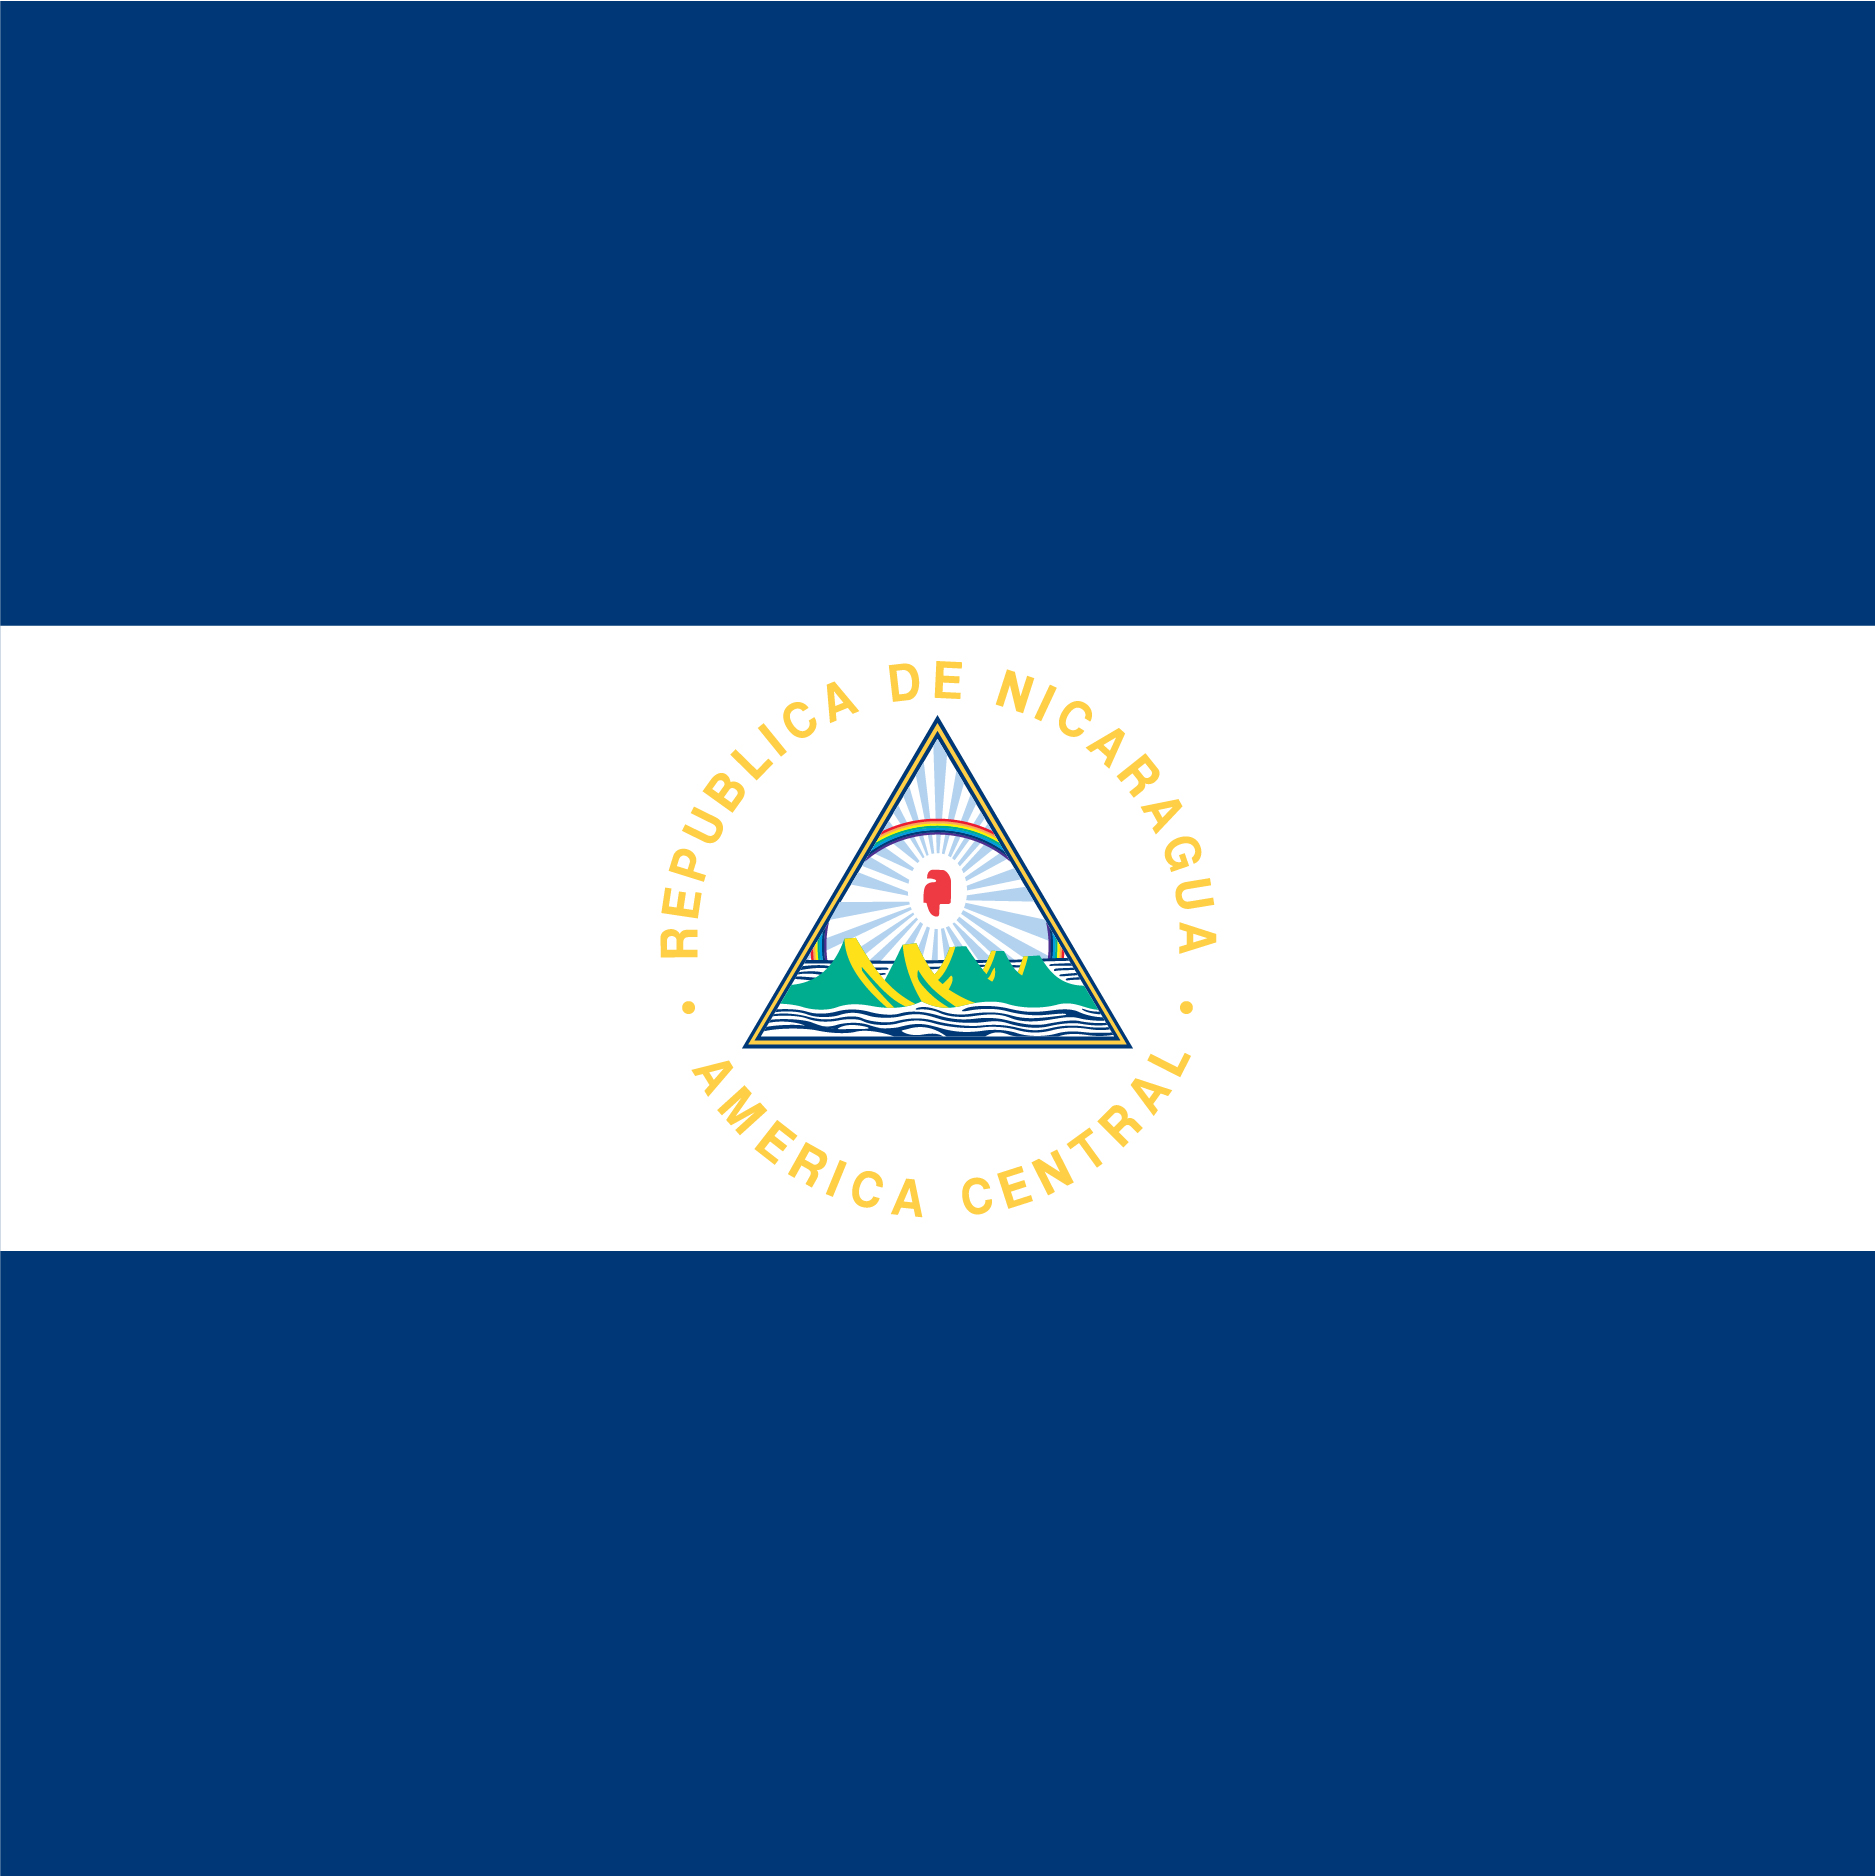 The Nicaragua Flag 